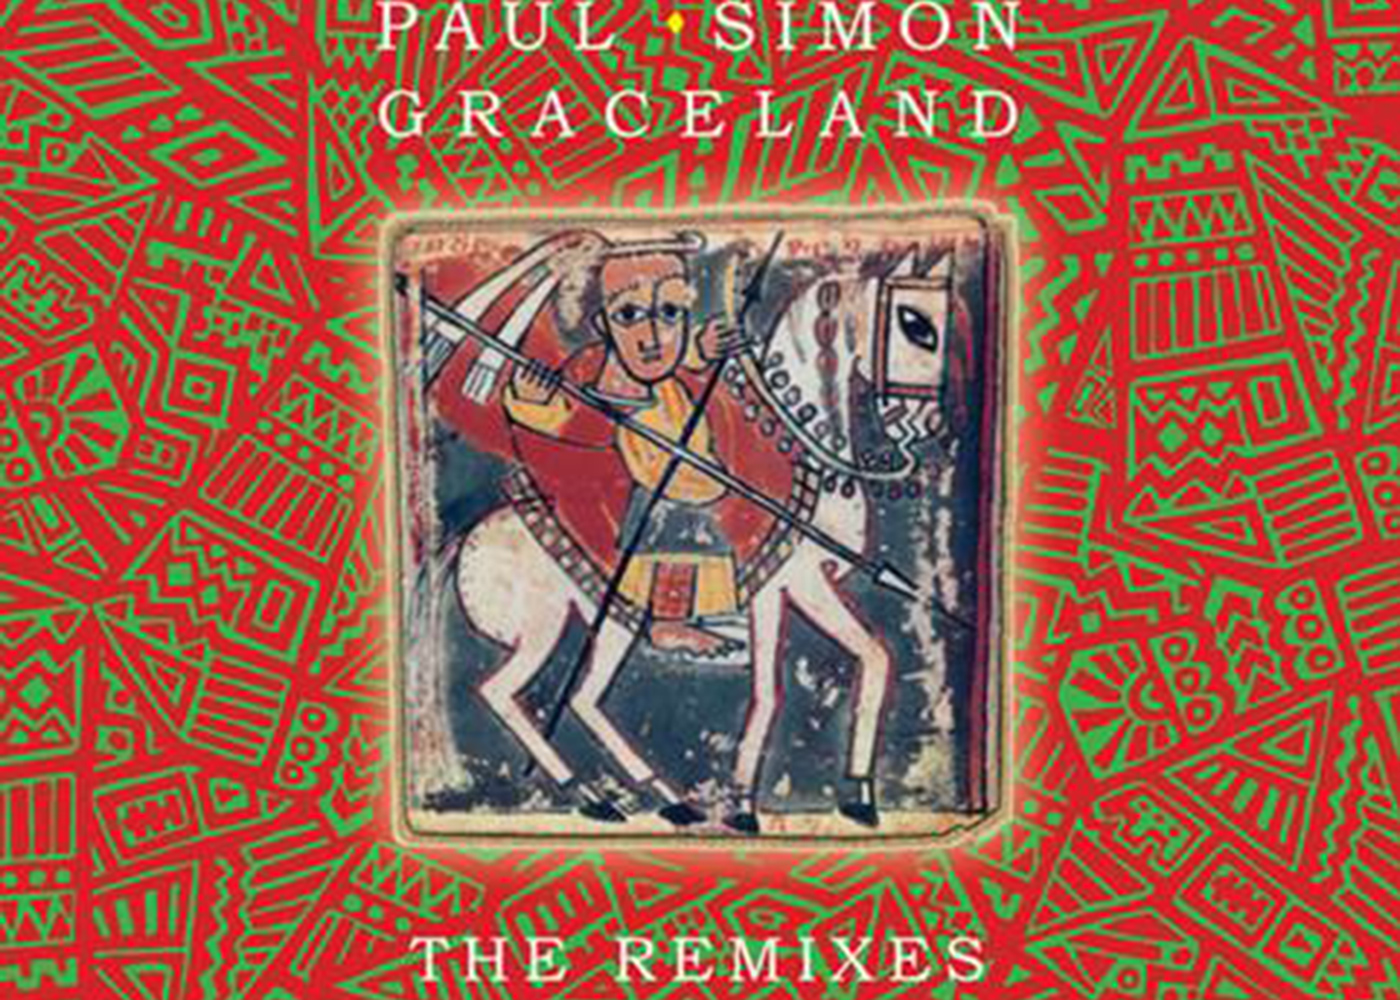 ポール・サイモンの最高傑作『グレイスランド』をダンス・ミュージックのビッグ・スター達が革新的リミックス |  洋楽情報・来日アーティスト・セレブファッション情報なら ナンバーシックスティーン